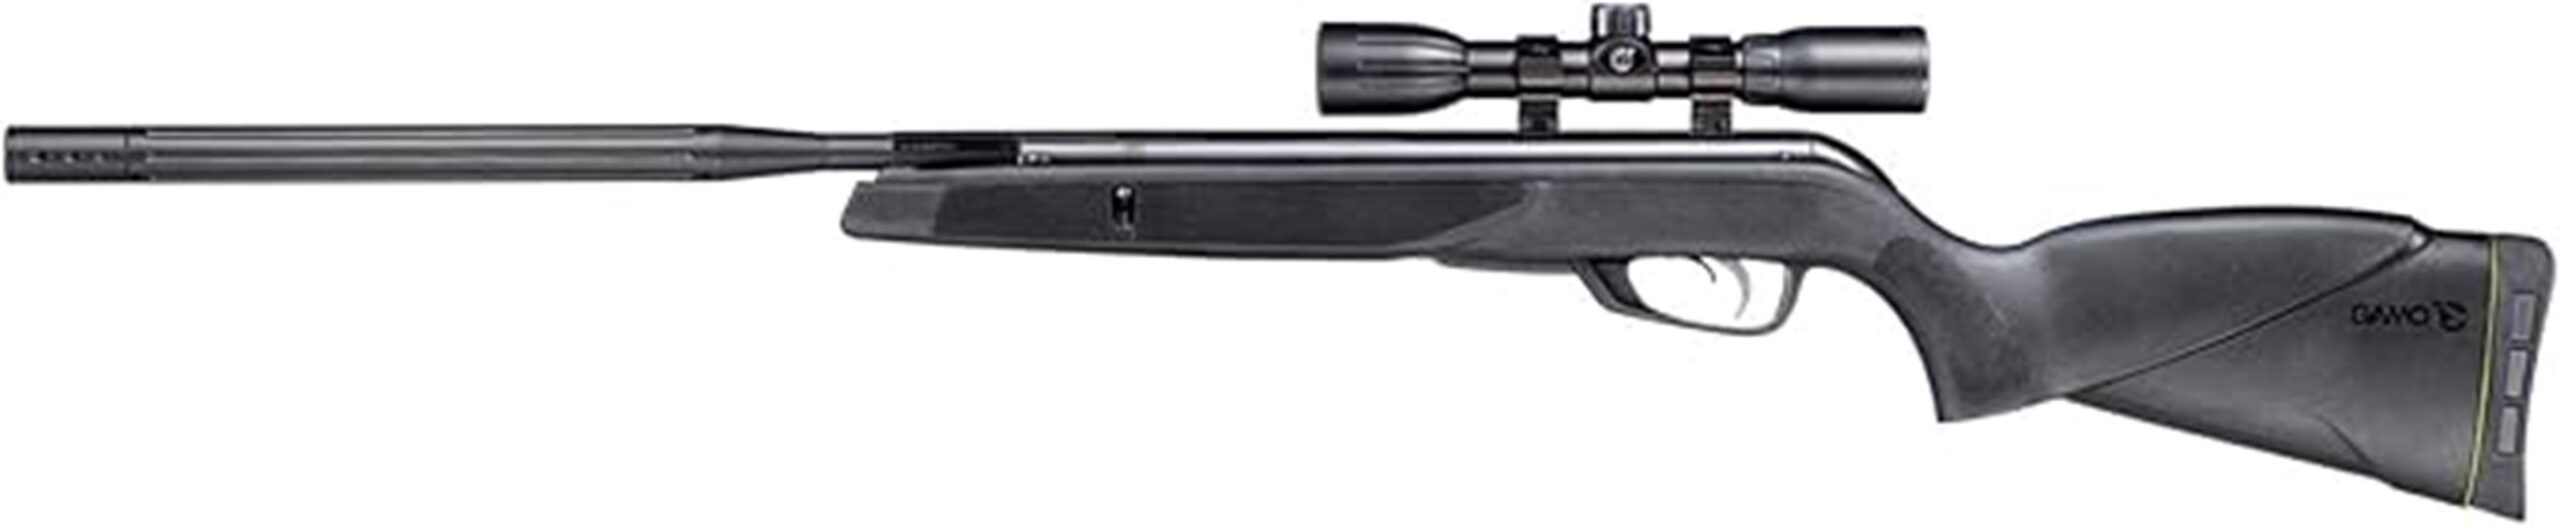 precision air rifle design